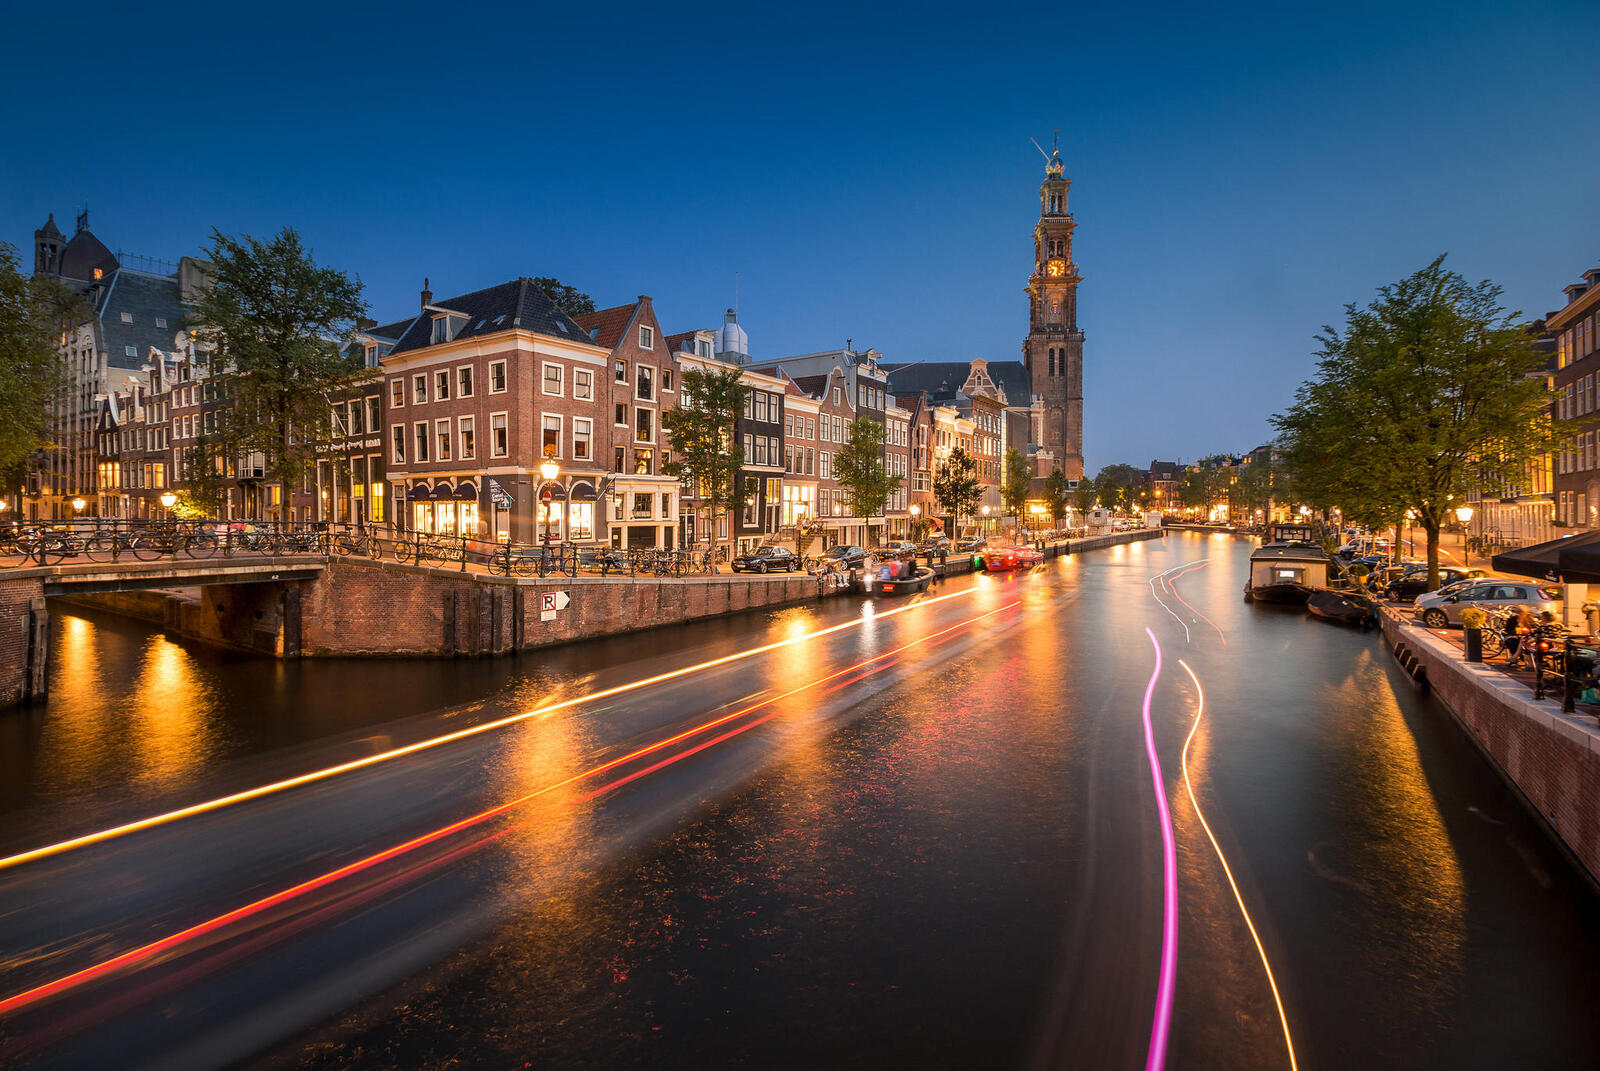 Обои Голландия Амстердам вечер на рабочий стол